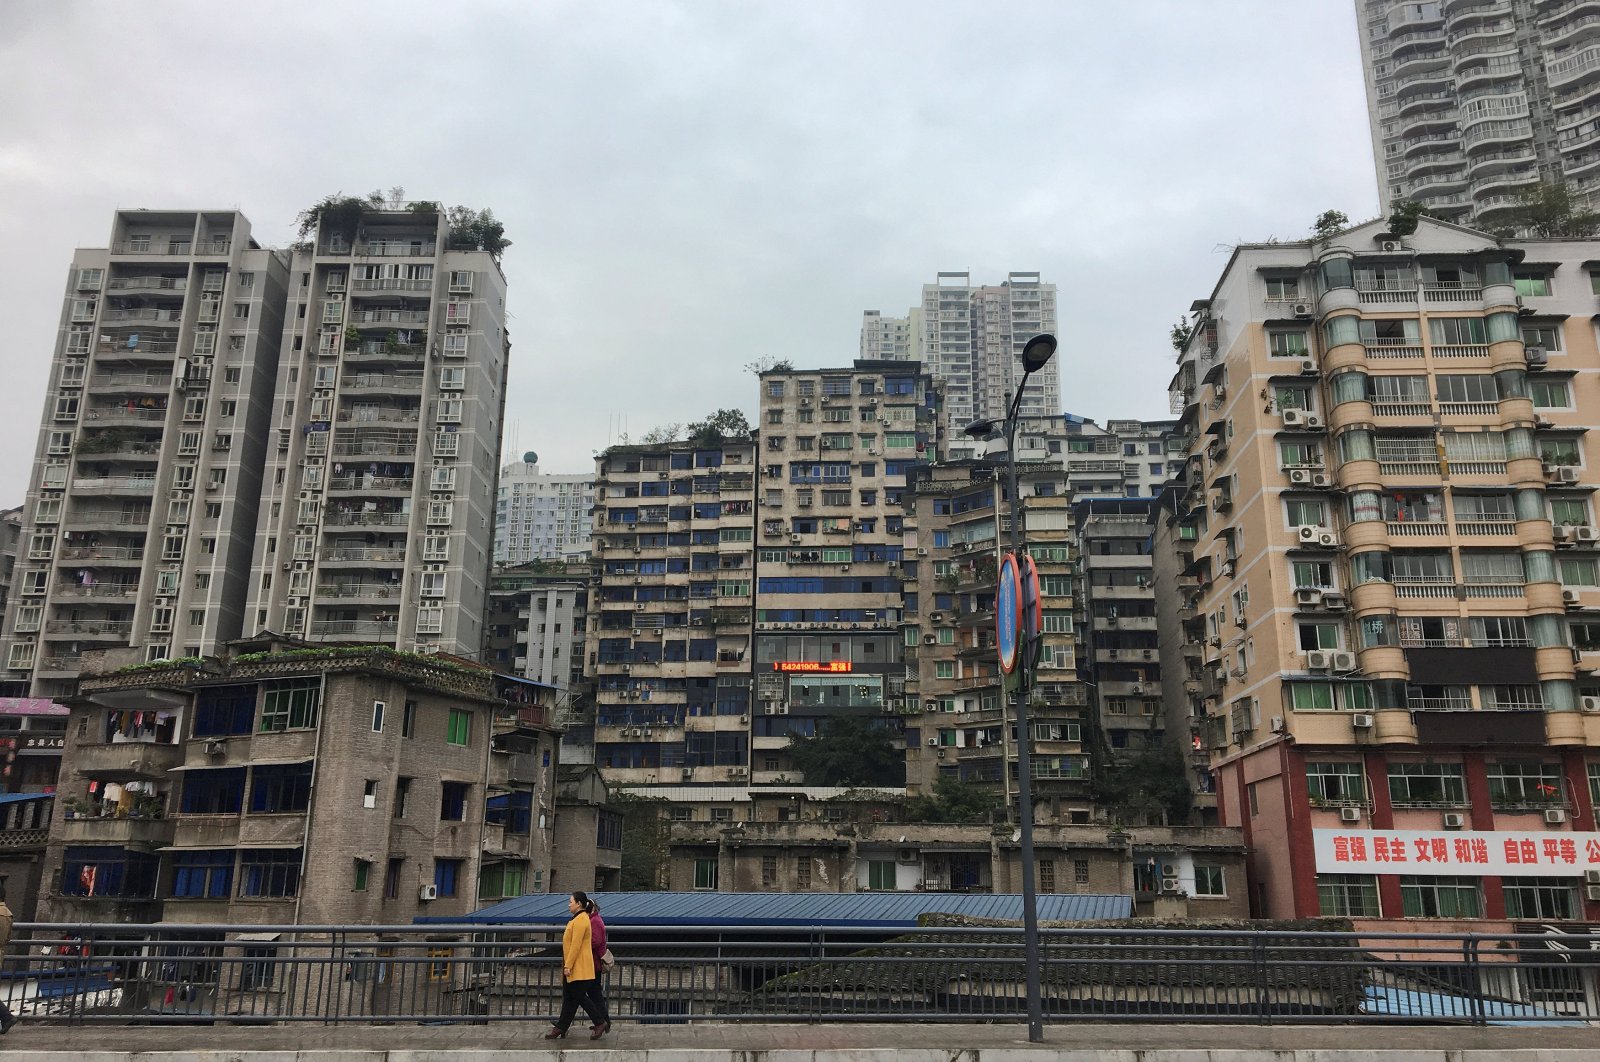 Residential buildings are seen in Zhongxian, Chongqing, China, Nov. 13, 2017. (Reuters Photo)